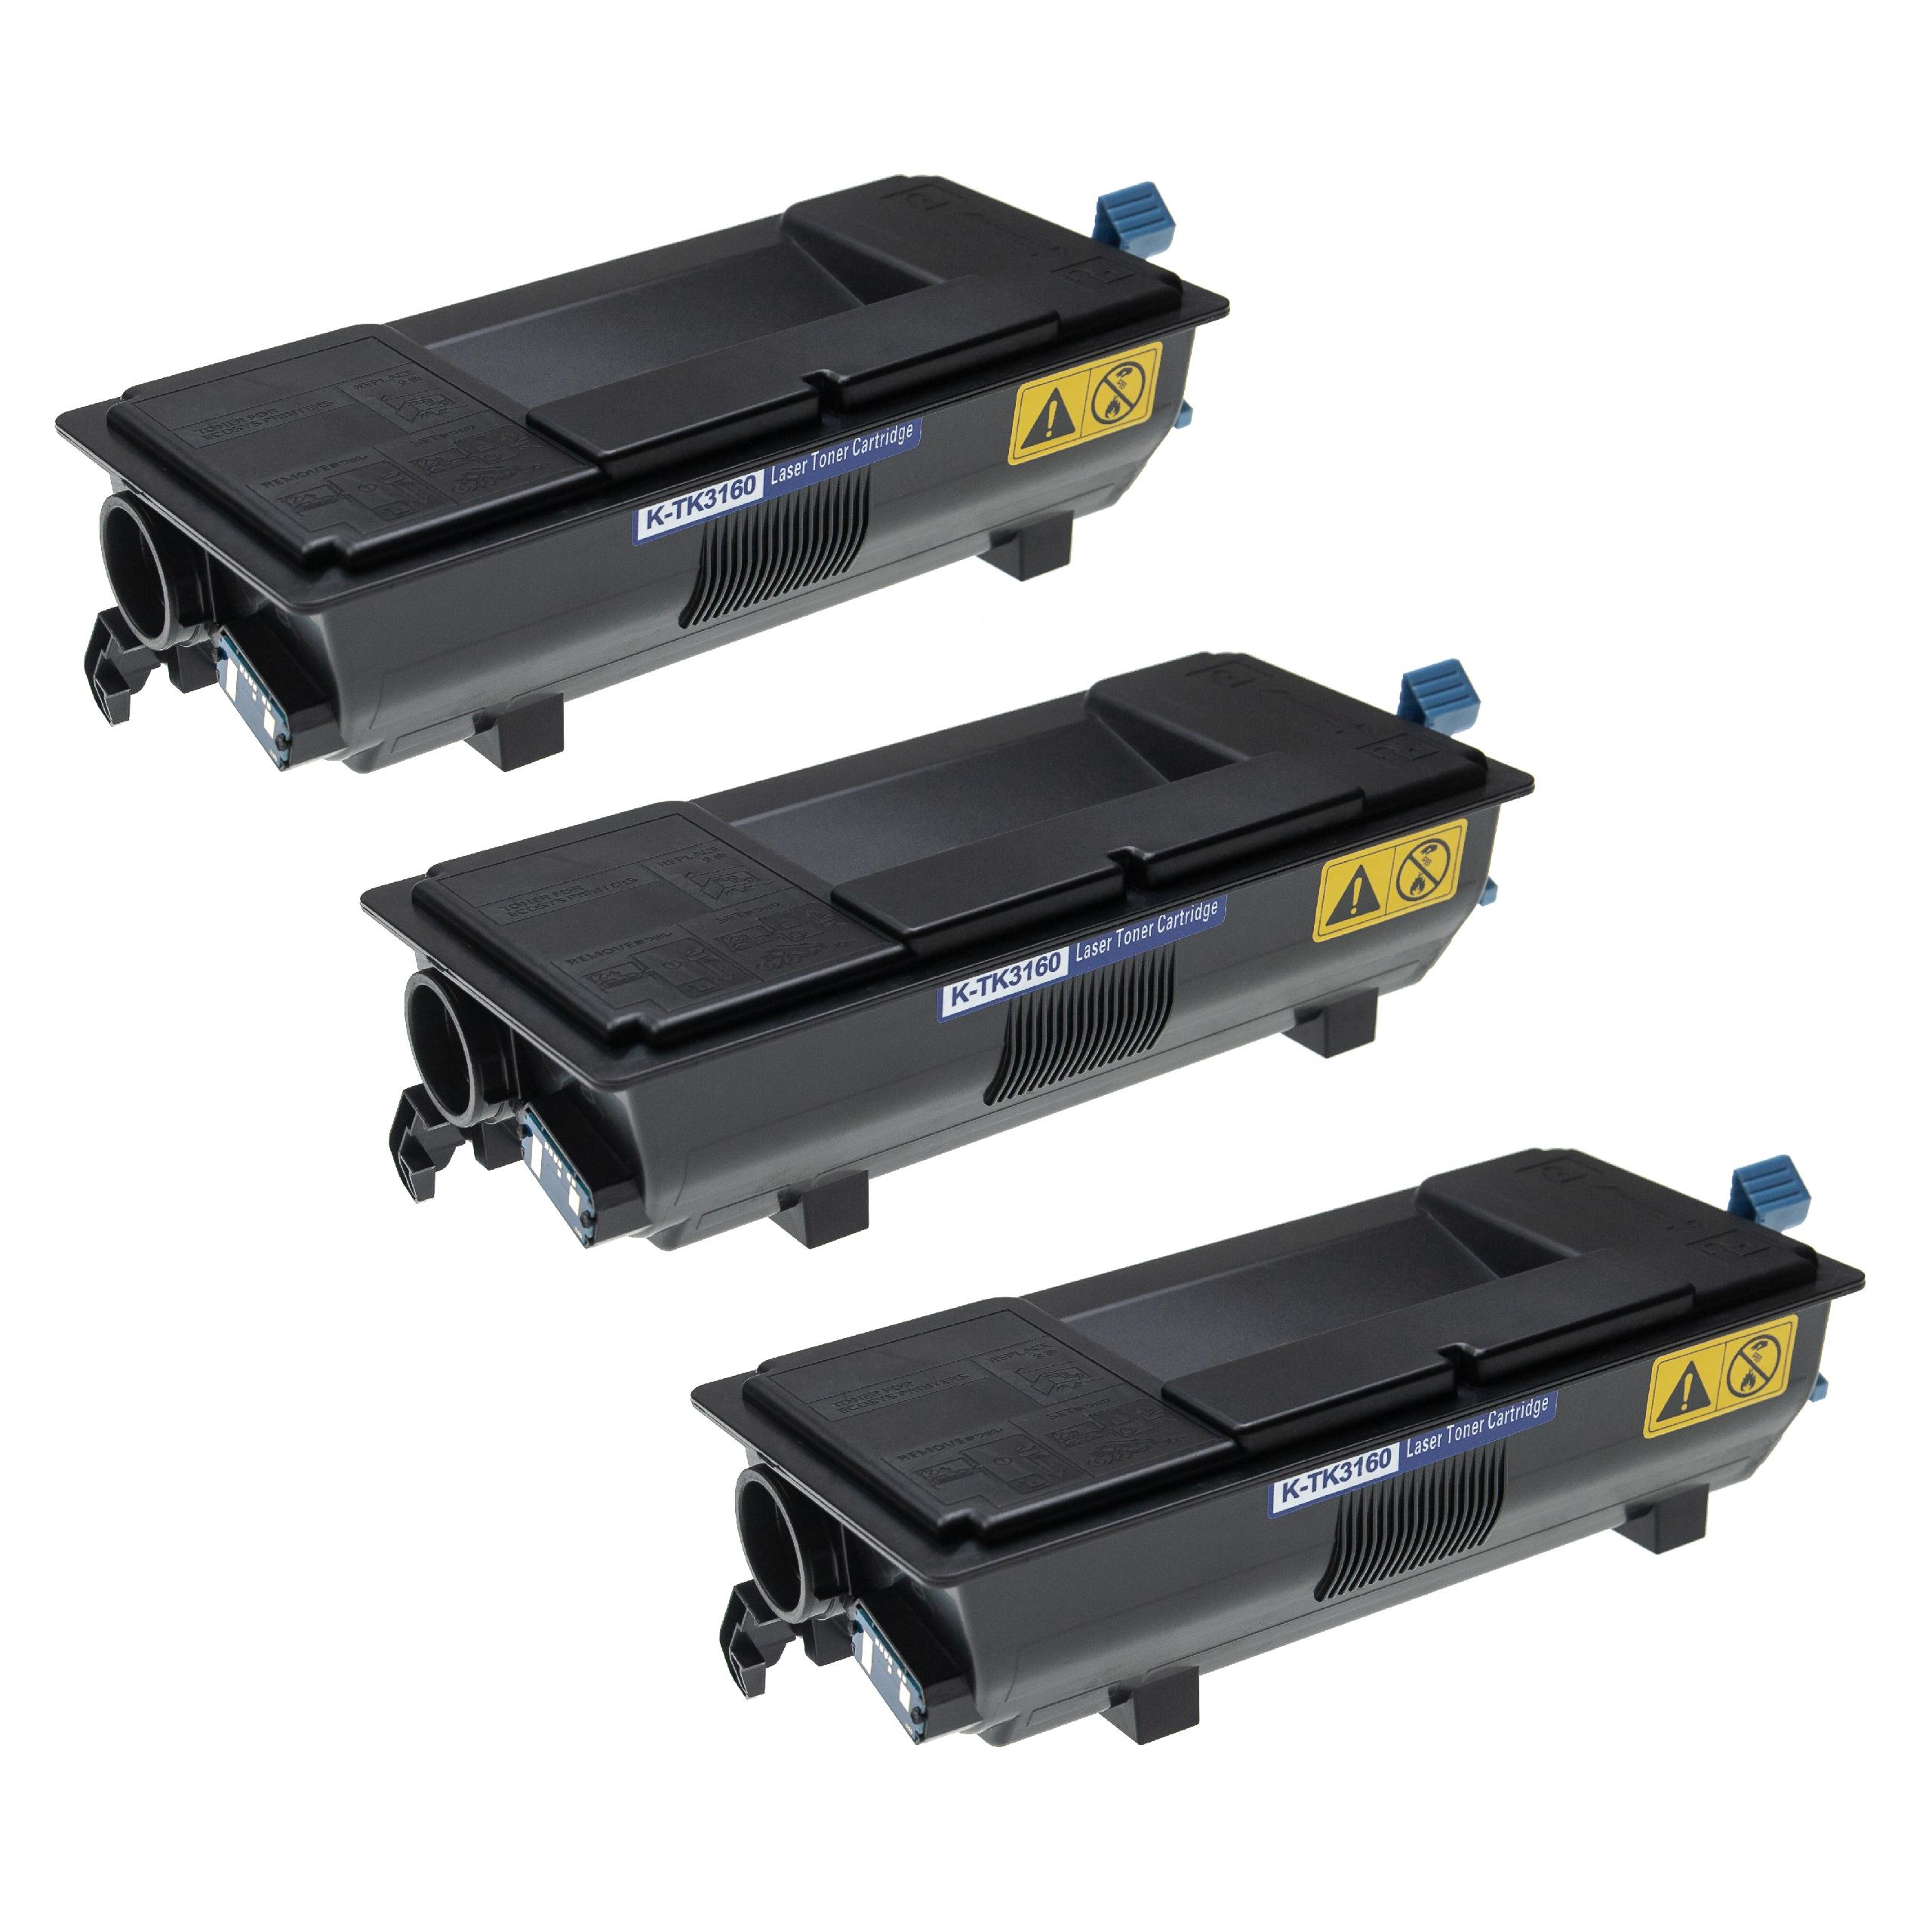 3x Toner sostituisce Kyocera TK-3160 per stampante Kyocera + vaschetta toner esausto - Nero